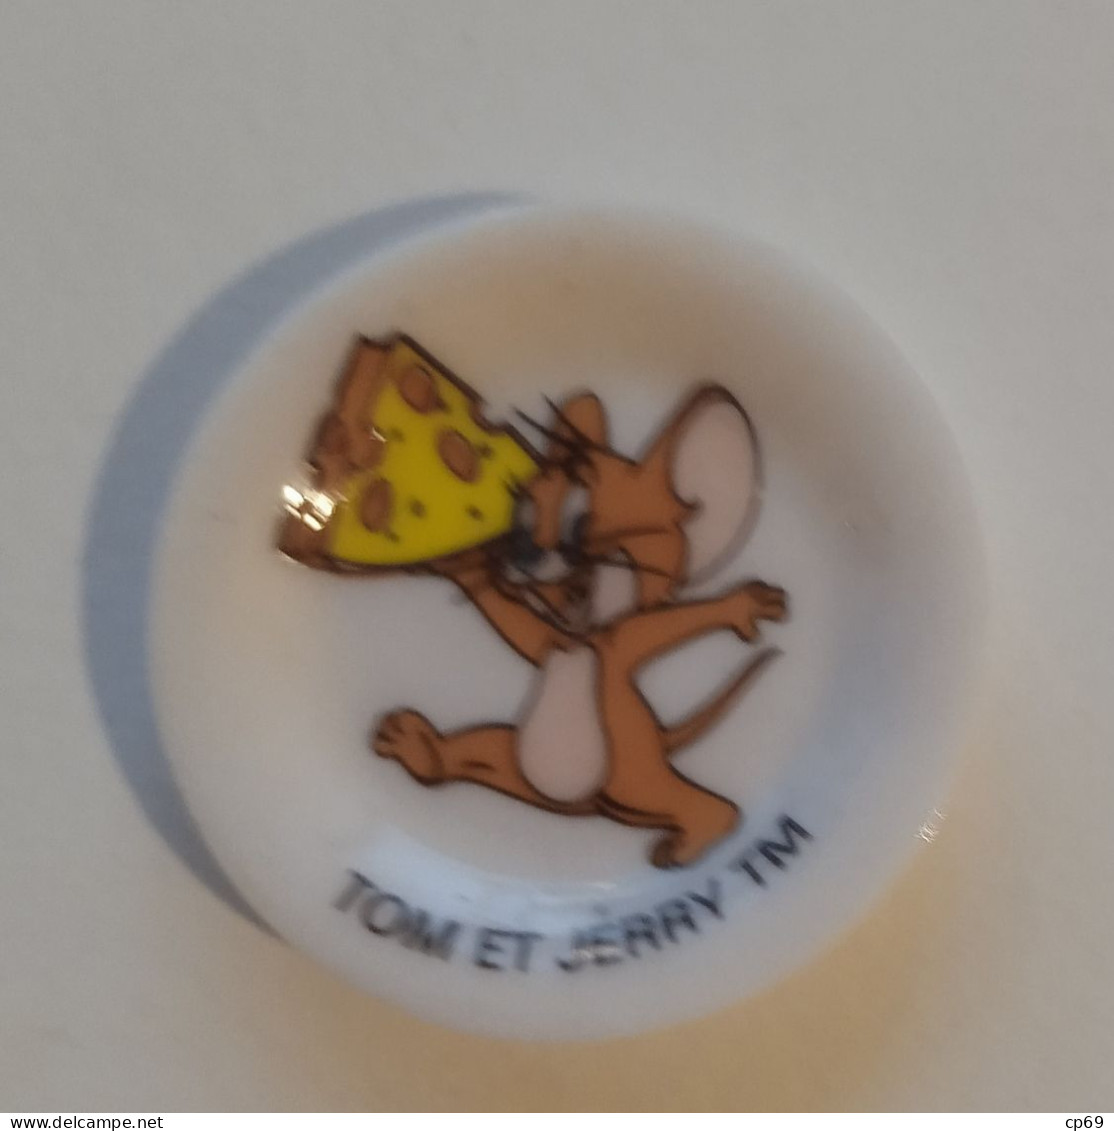 Fève Jerry Souris Topo Mouse 老鼠 TM Warner Bros Format 3 Cm X 3 Cm En TB.Etat - Cartoons